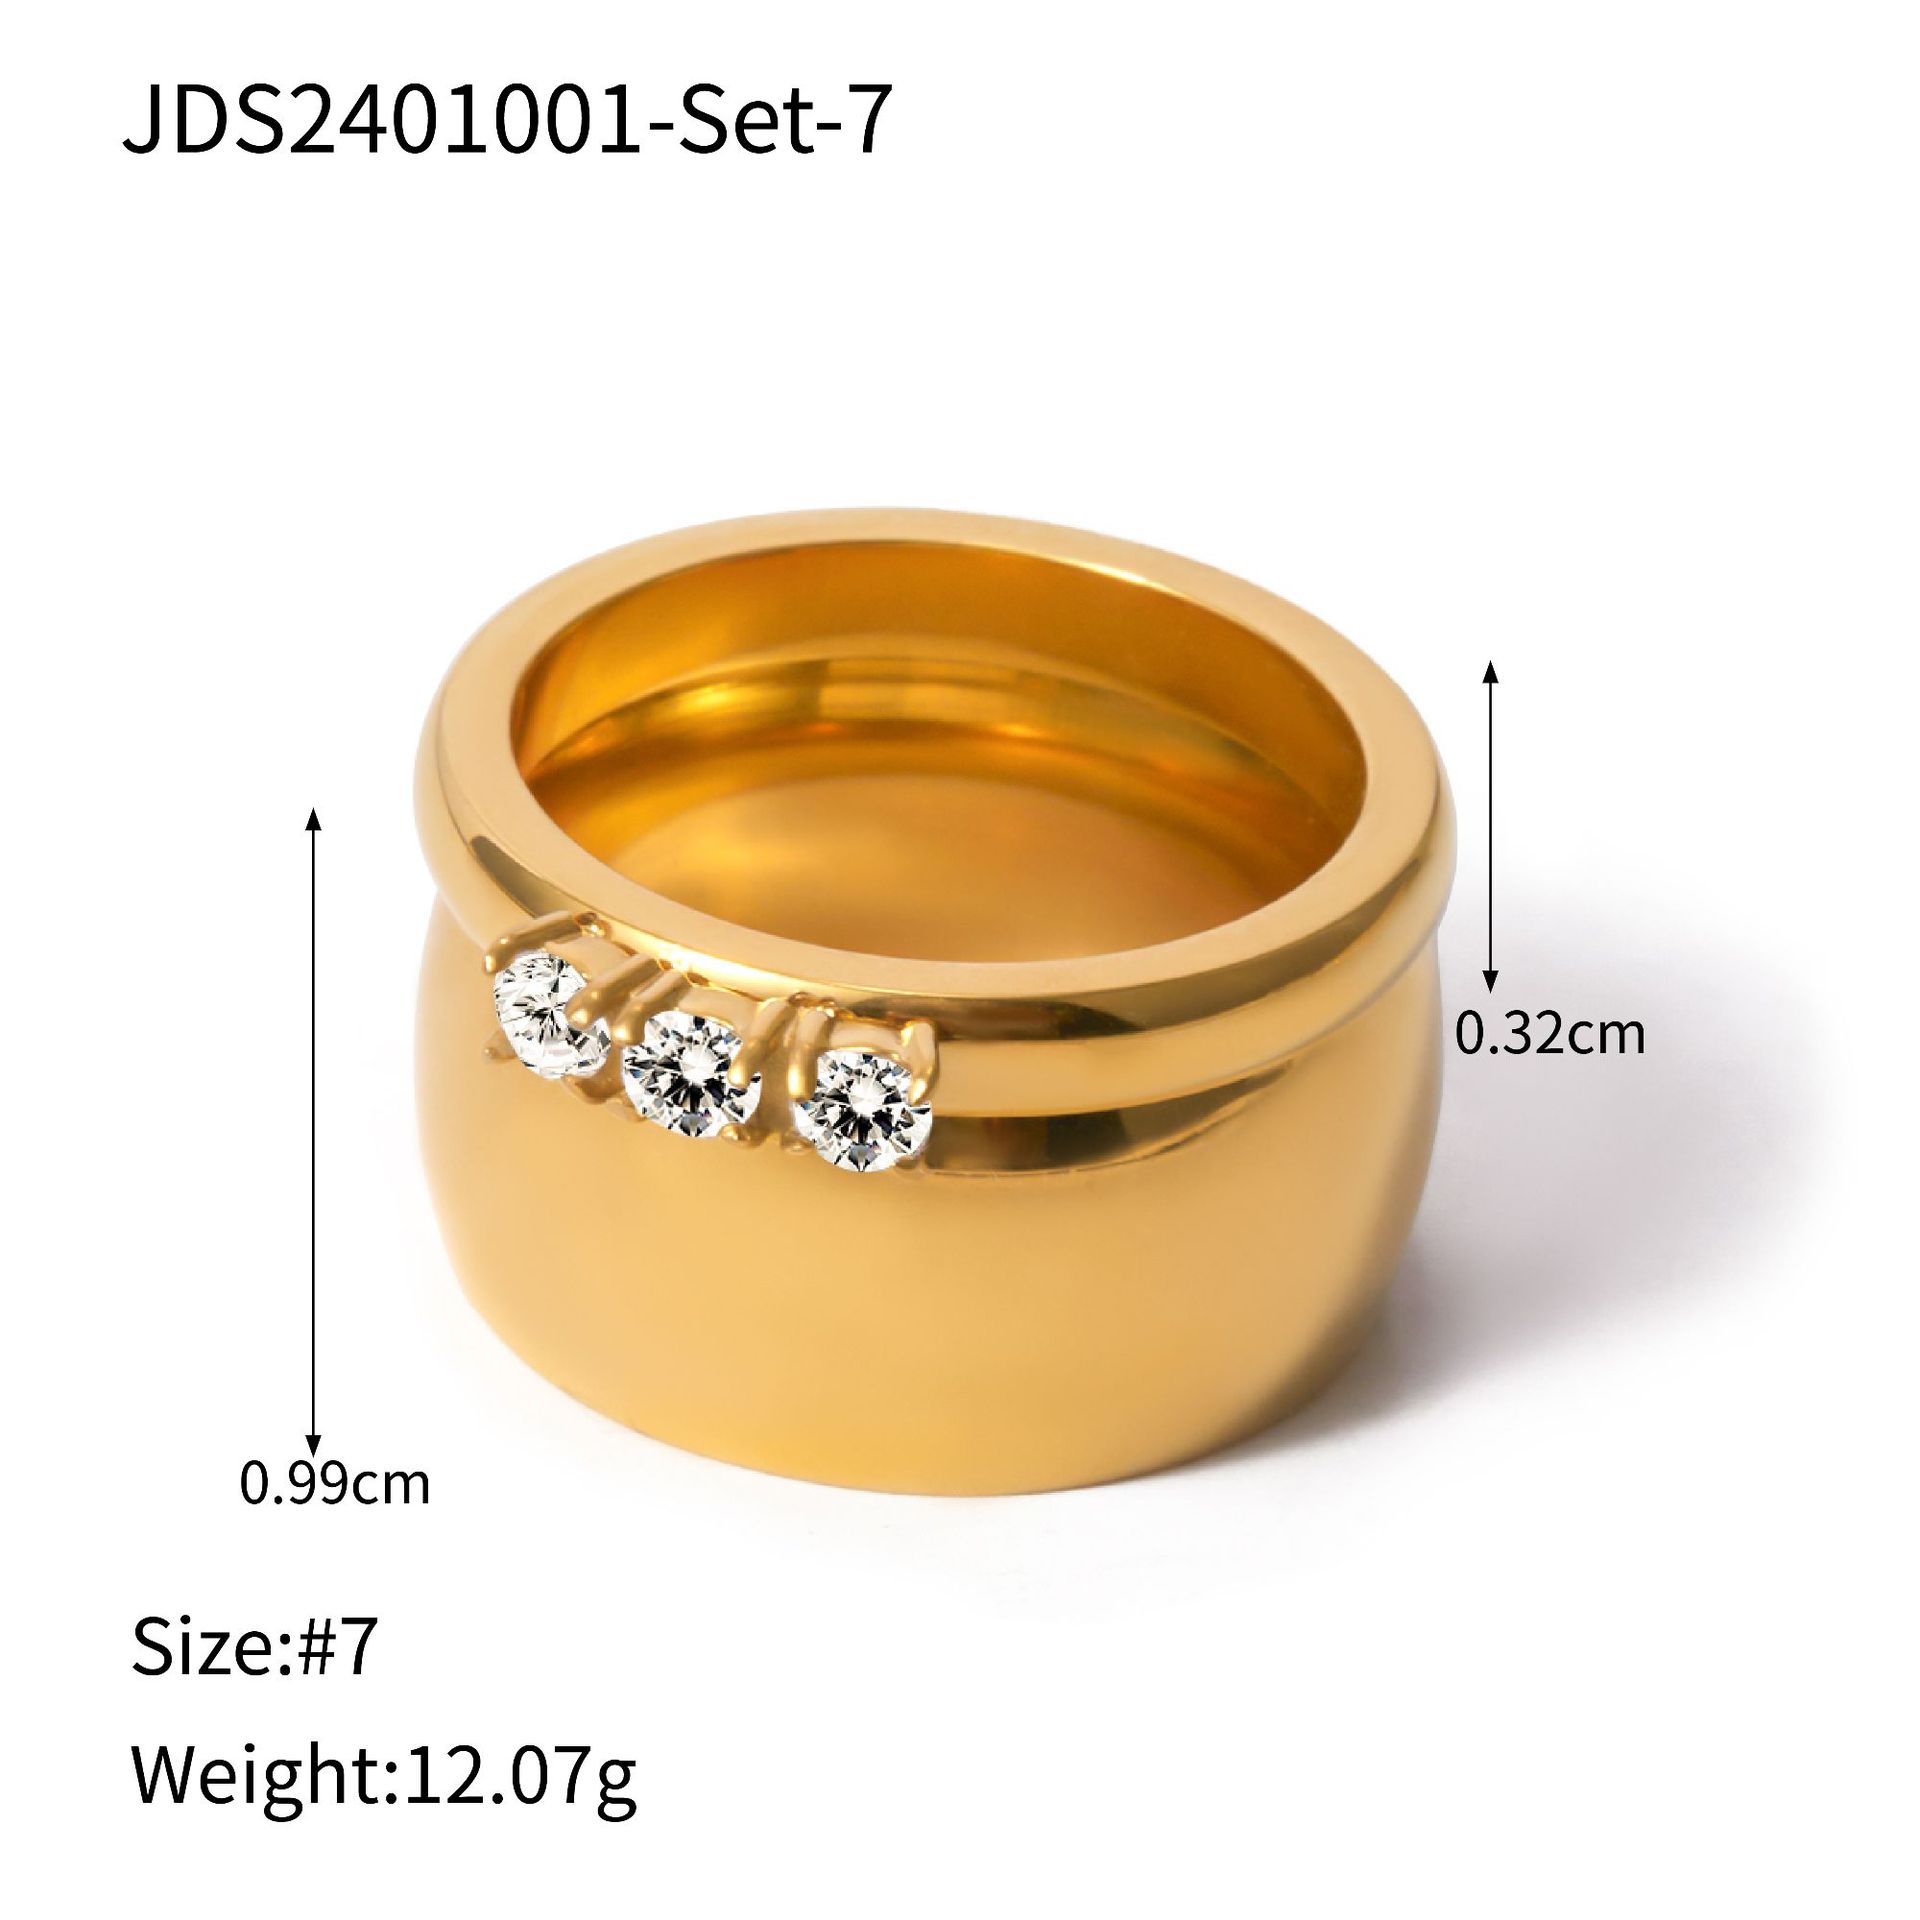 JDS2401001-Set-7